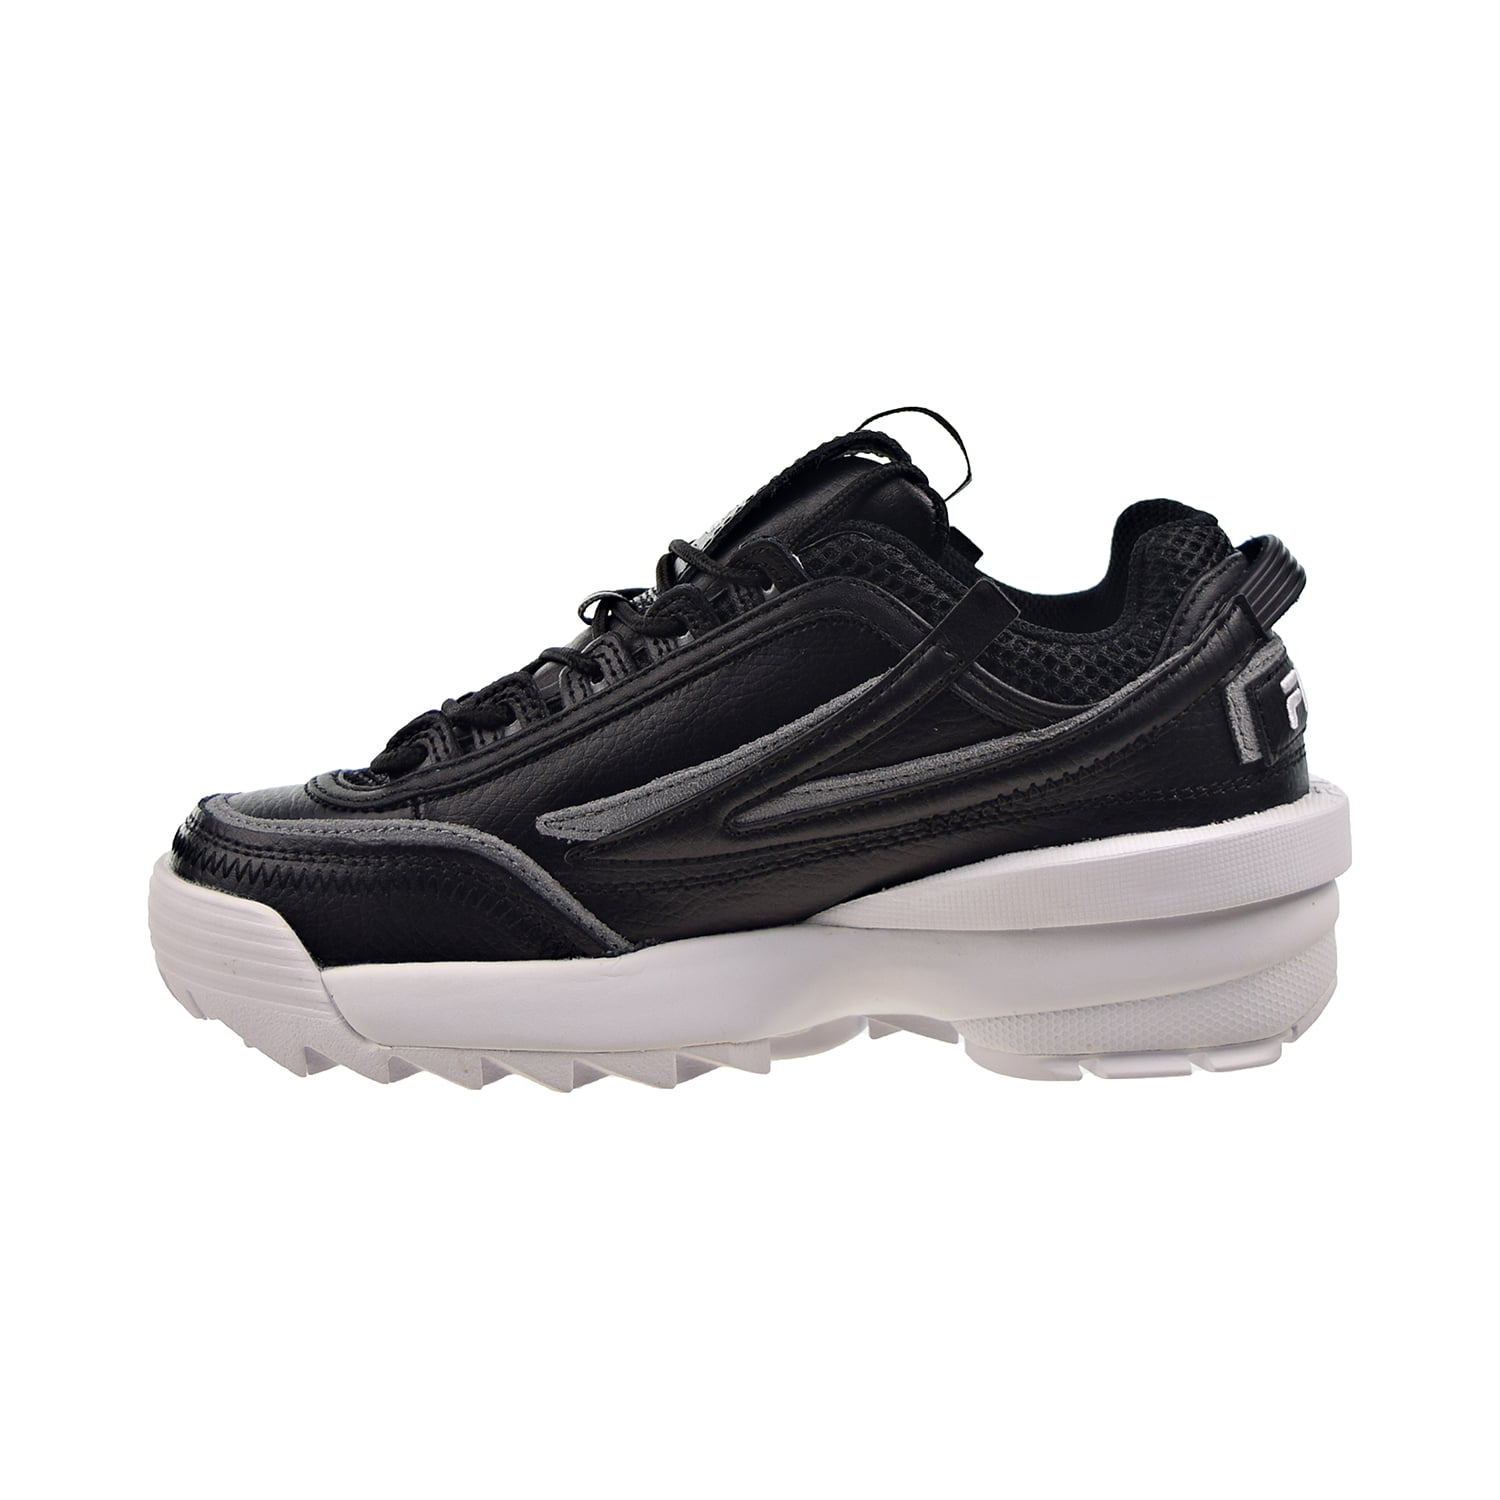 Fila Disruptor 2 EXP Women's Shoes Black-Monument-White 5xm01544